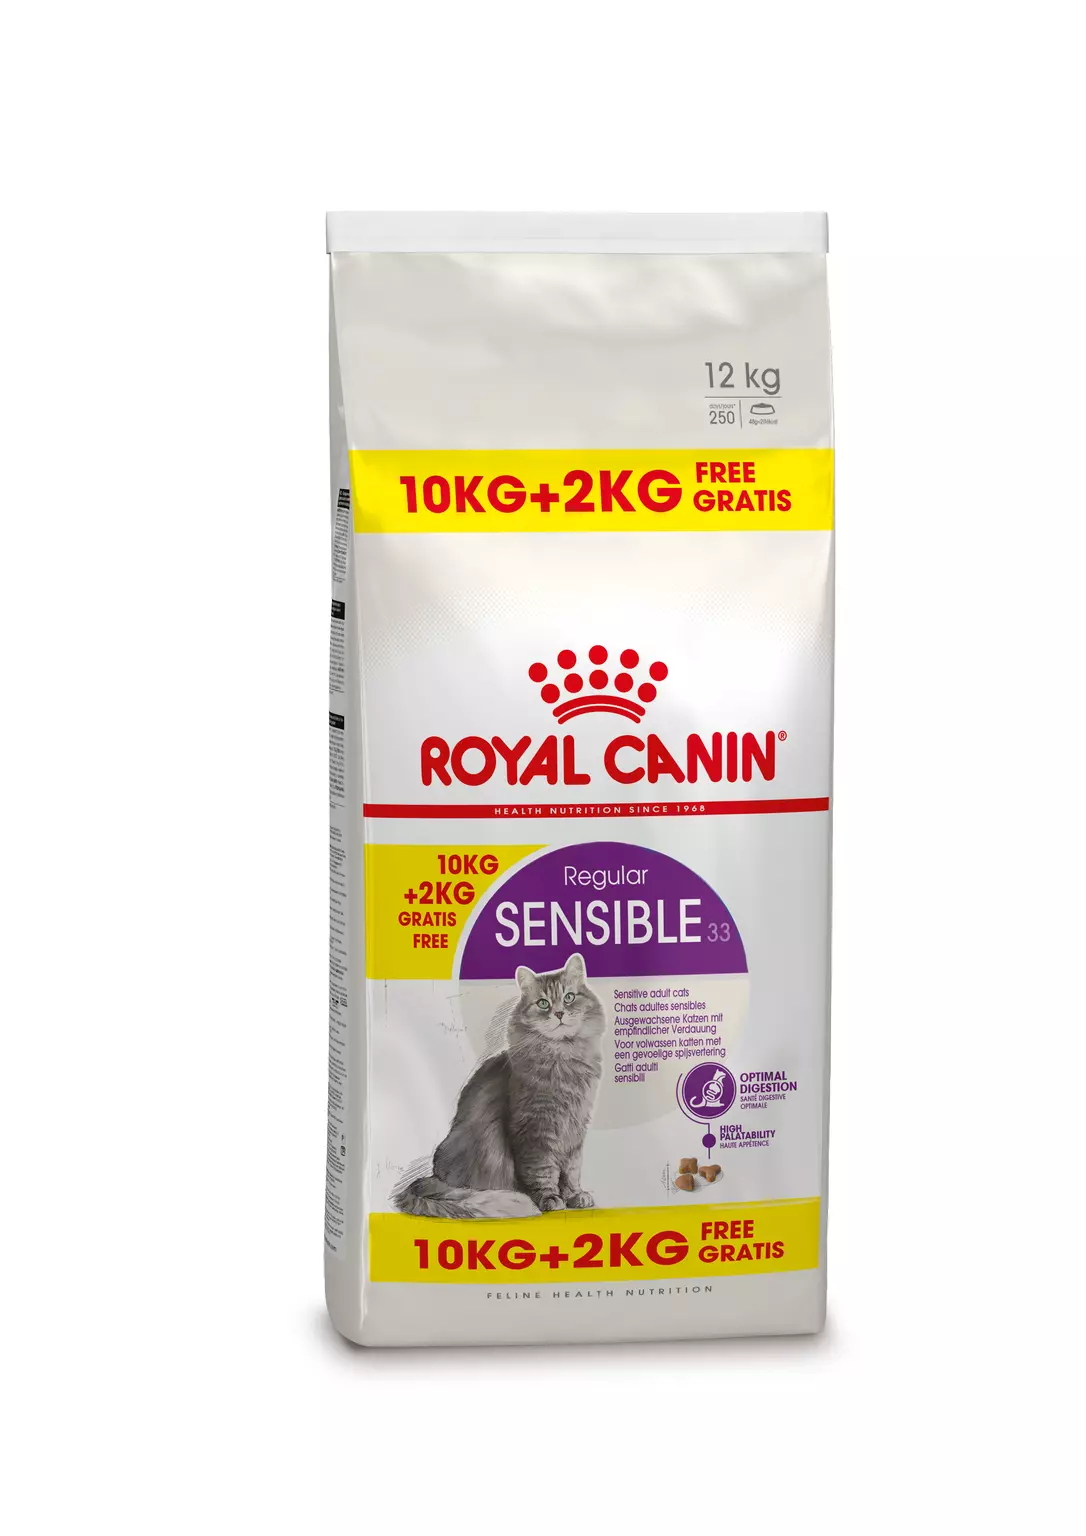 Royal Canin sensible regular 10 kg + 2 kg gratis - Van Noord's Dierenvoeders